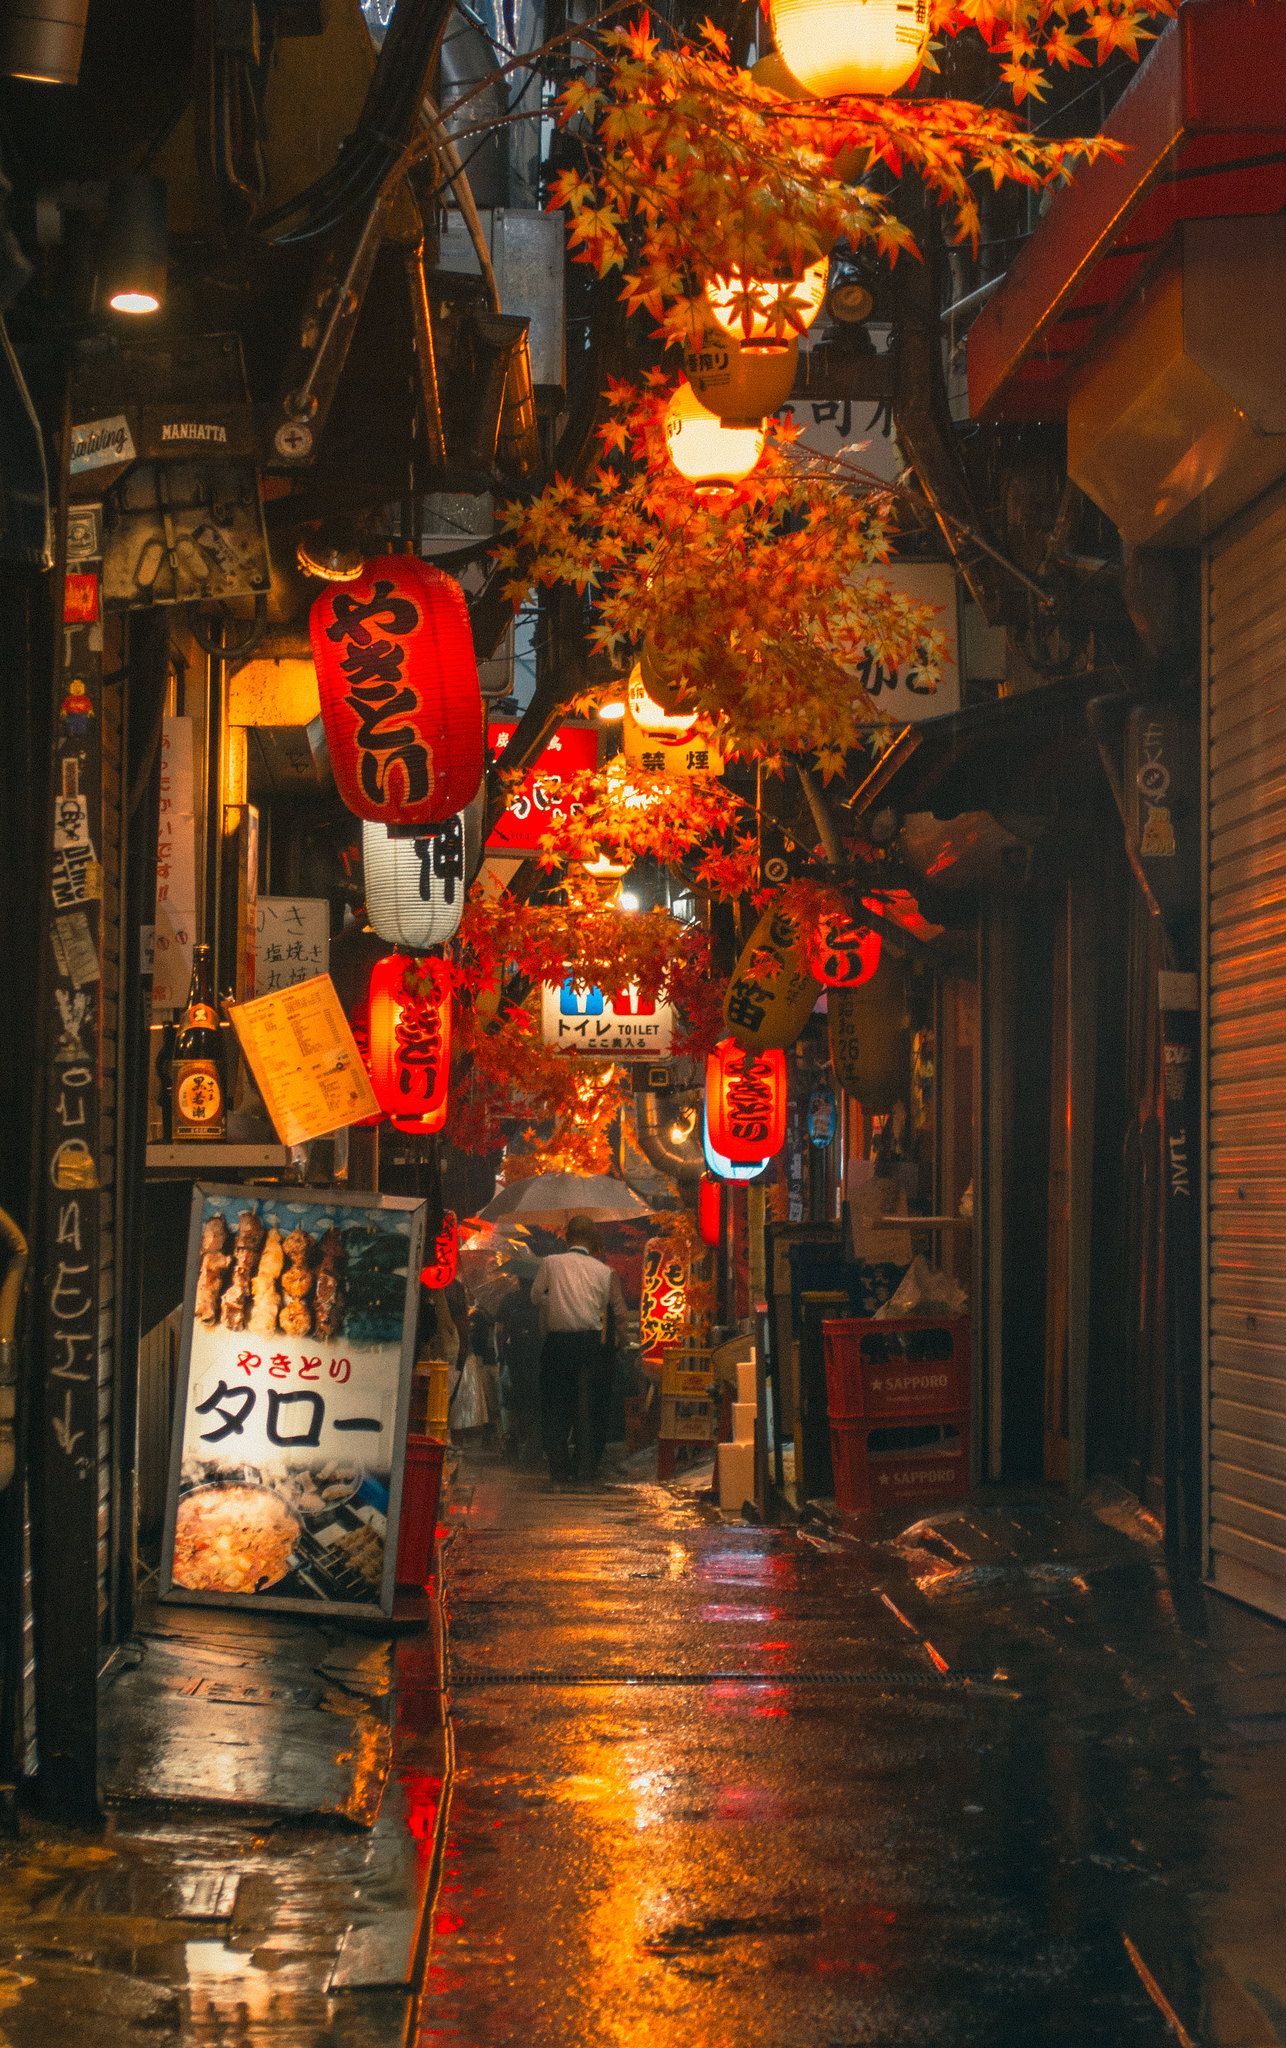 Phố đêm Nhật Bản đa sắc màu như một bức tranh phong cảnh được vẽ tay, khiến bạn ngỡ như đang bước vào một trò chơi máy tính 3D. Nét đẹp của những con đường đầy màu sắc cùng những ngôi nhà kiến trúc độc đáo sẽ khiến cho bạn mong muốn ghé thăm Nhật Bản ngay lập tức.